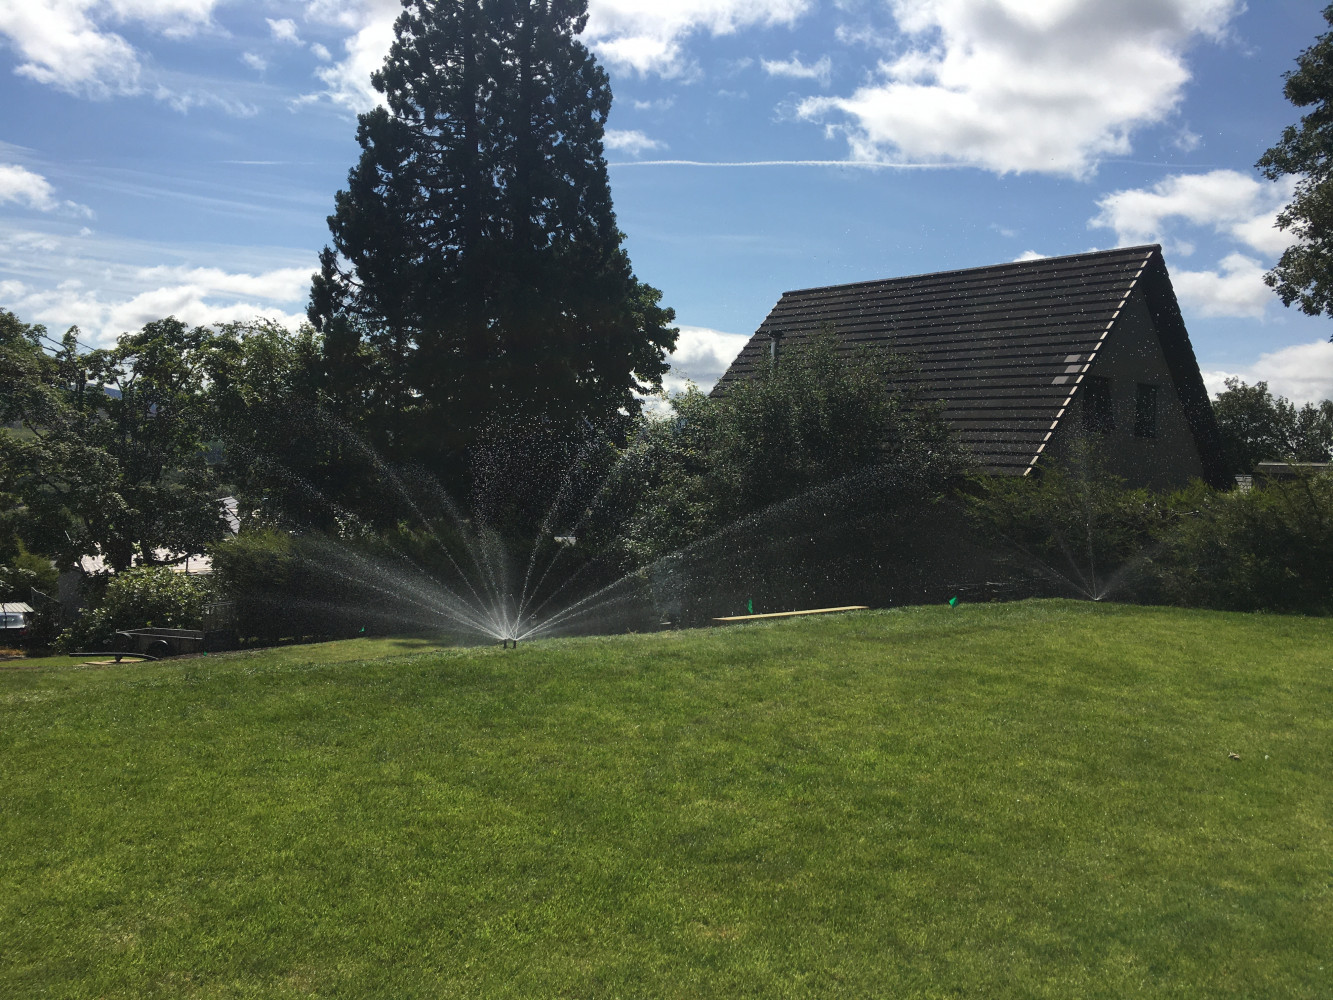 Irrigation in Scotland - the locals did wonder!